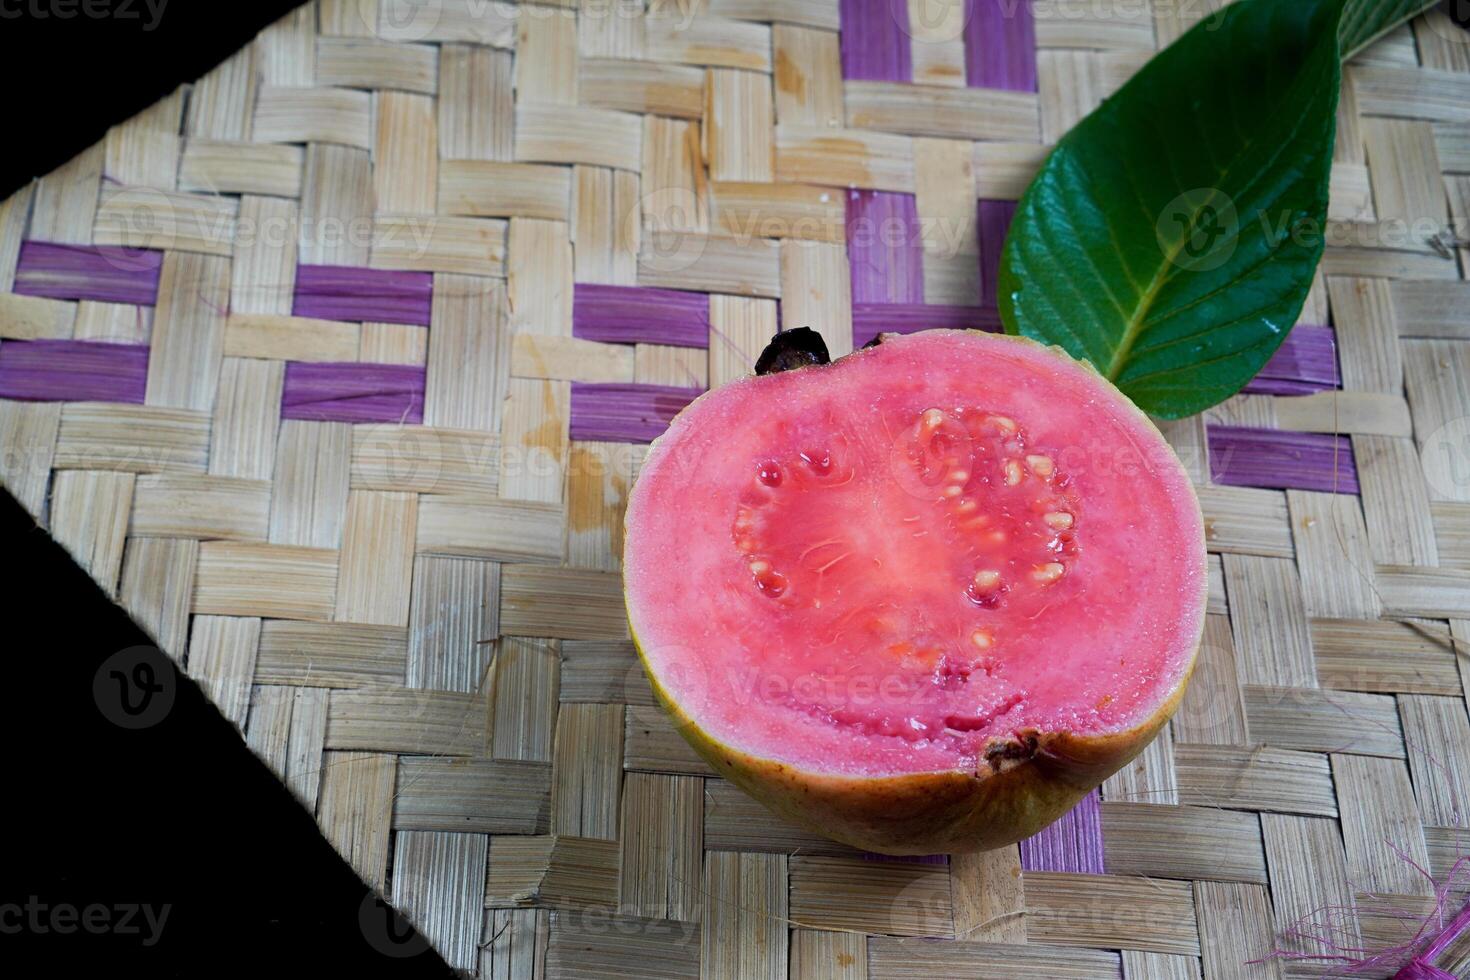 guava isolerat. guava frukt med röd kött med gulaktig grön hud och löv isolerat på en svart bakgrund med vävd bambu som en bas. foto